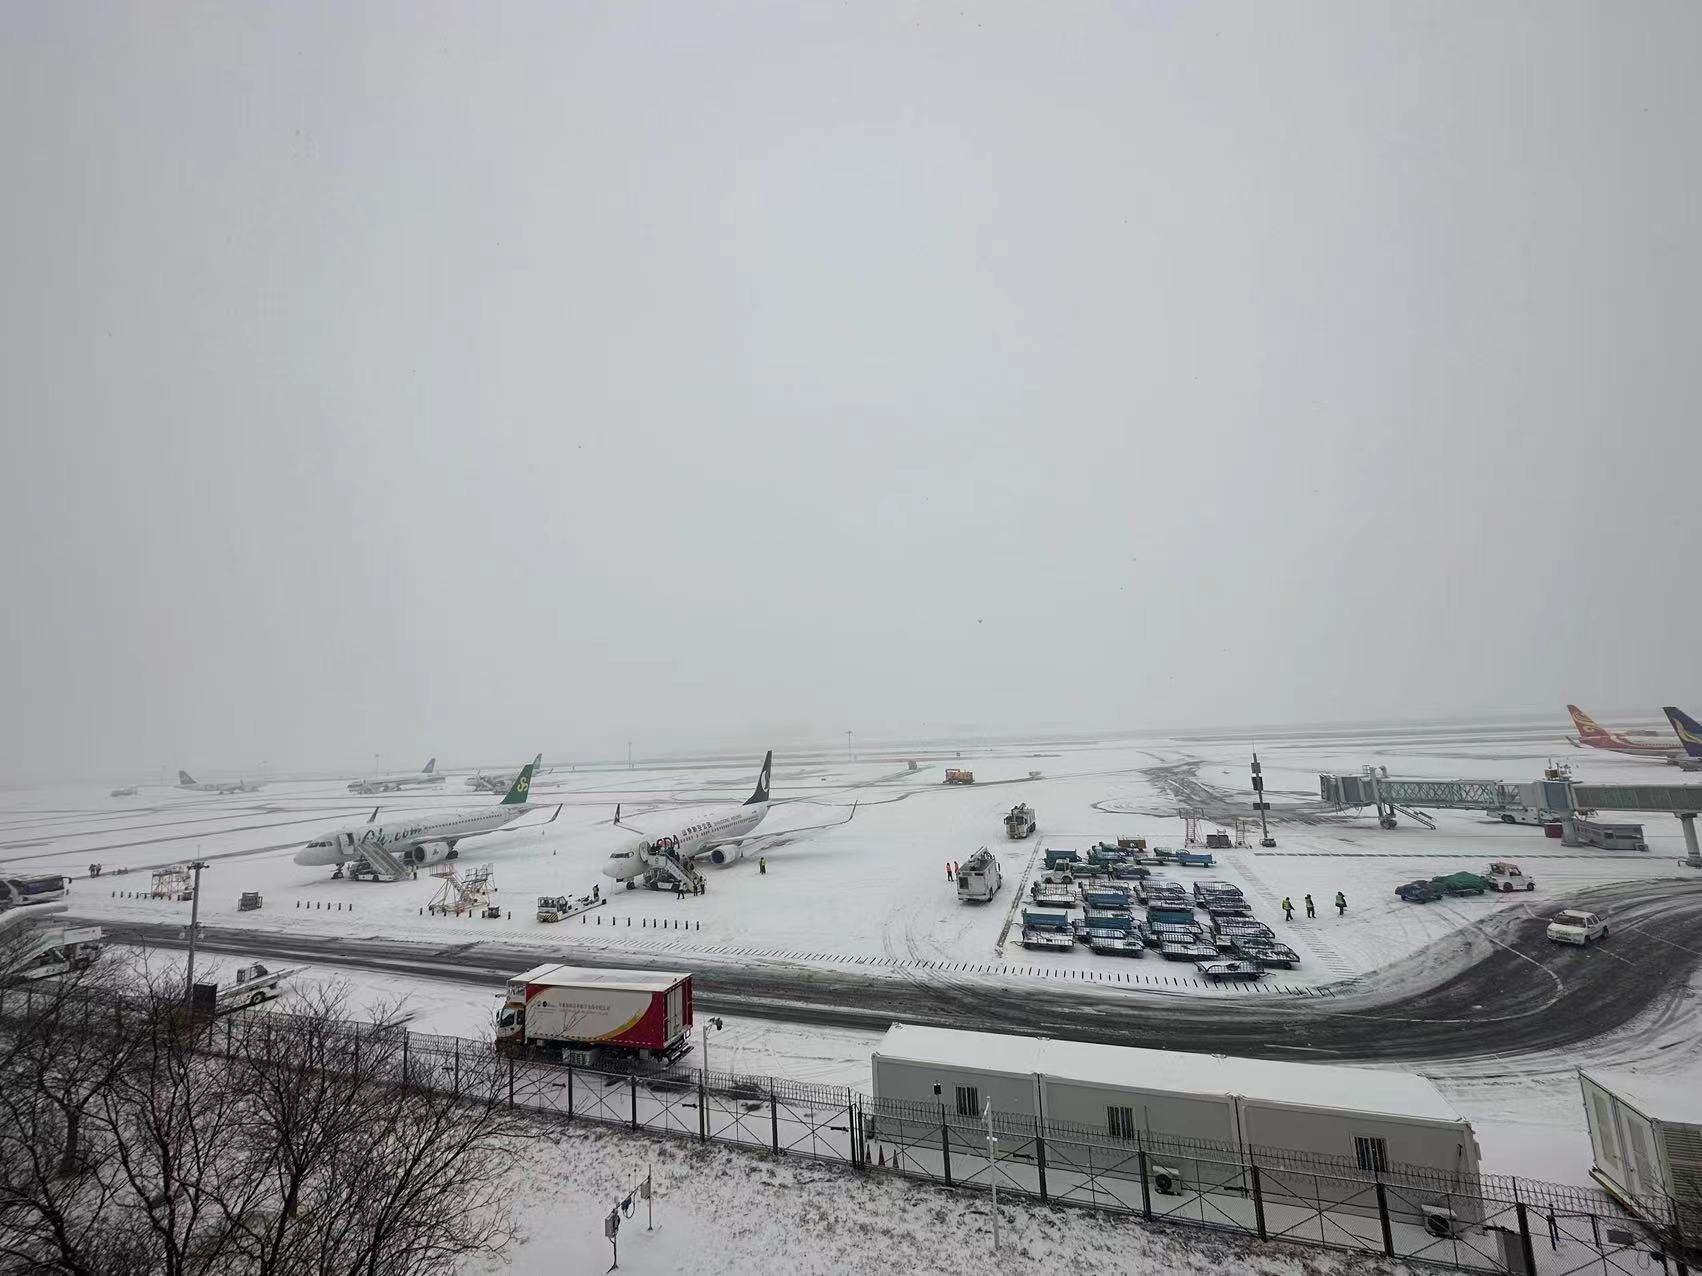 甘肃空管分局管制运行部区域一室迎战冰雪天气